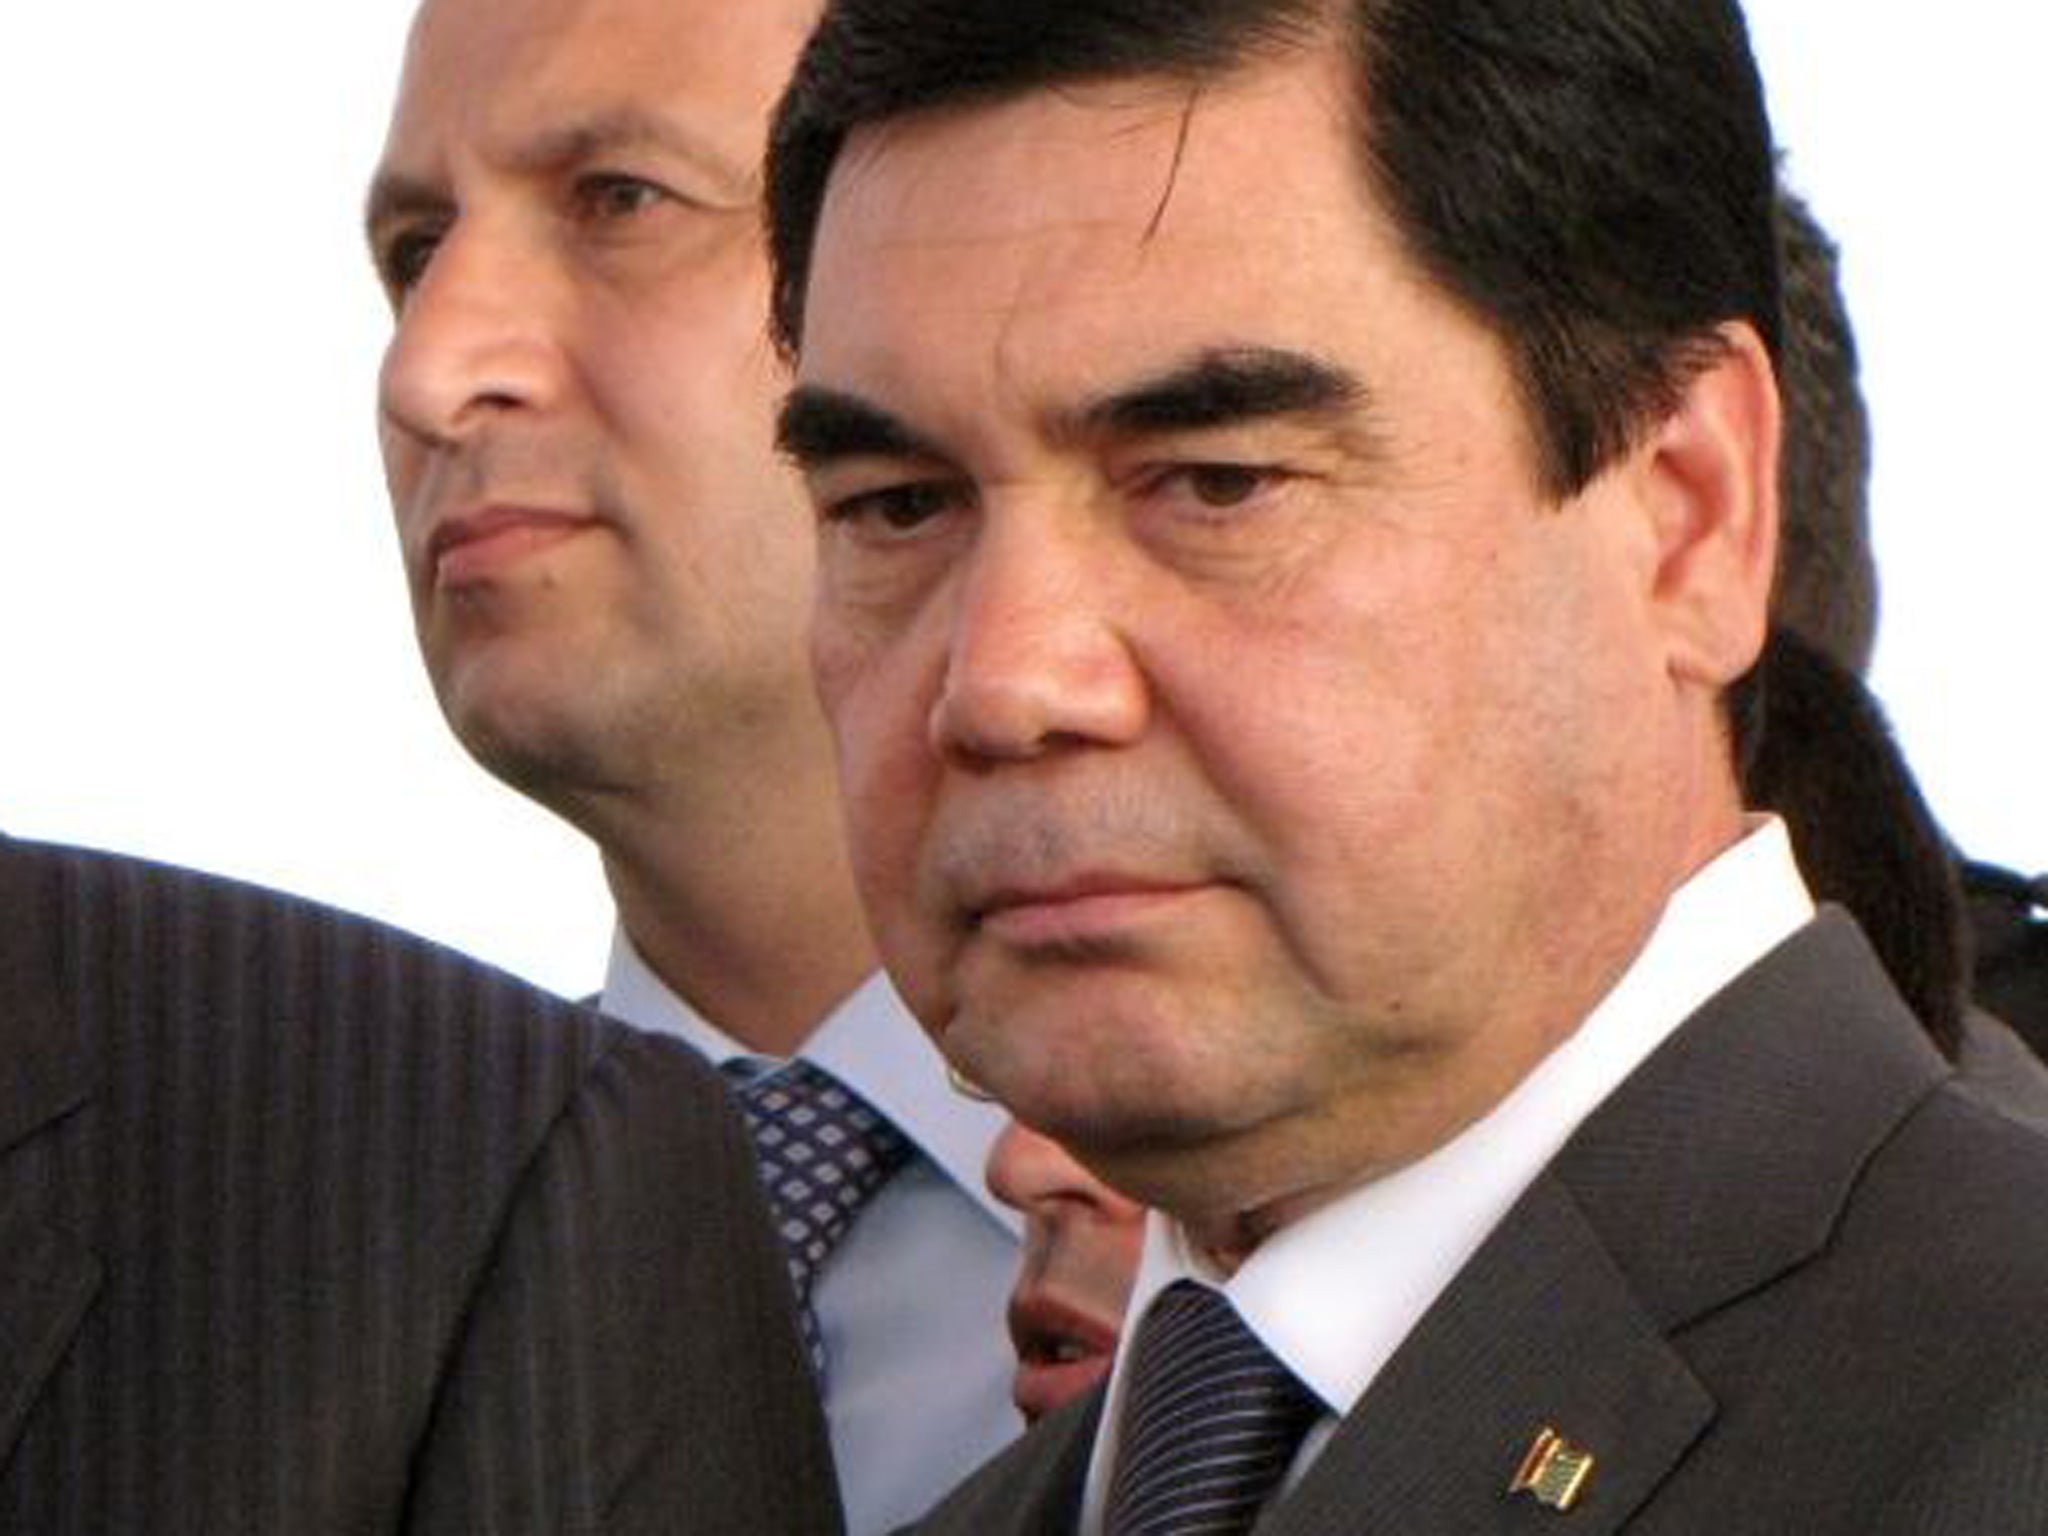 Turkmenistan's president Gurbanguly Berdymukhamedov